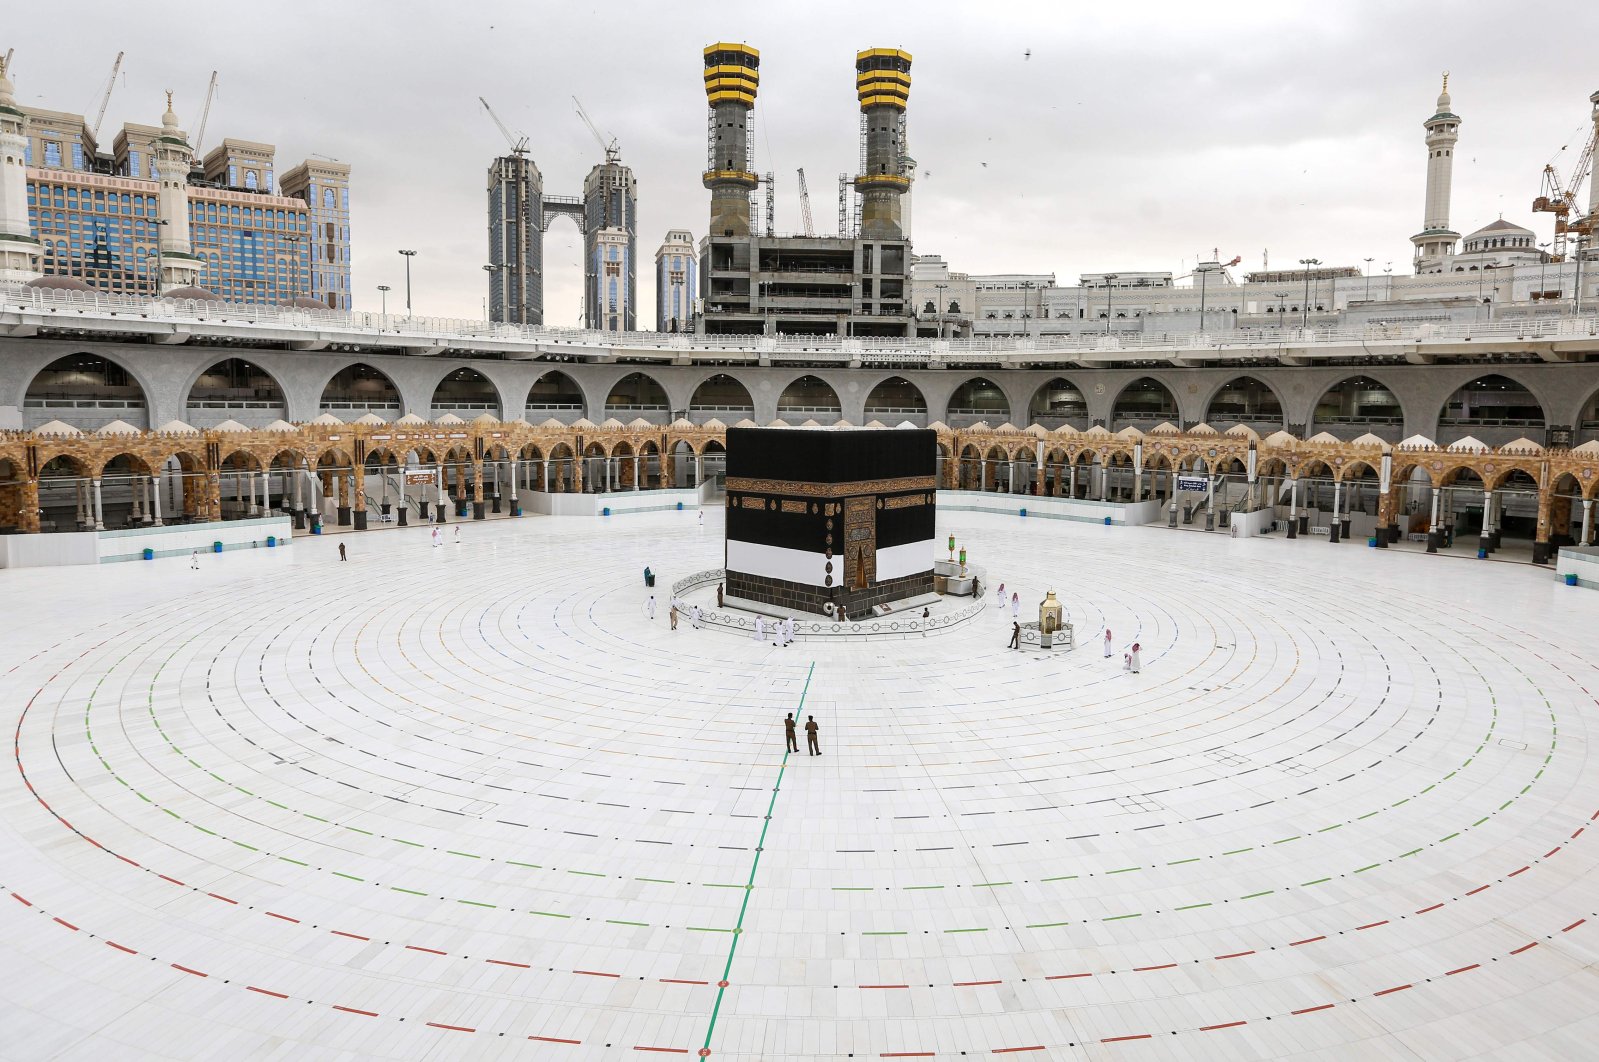 Mecca belongs to all Muslims, and Saudi Arabia shouldnt 